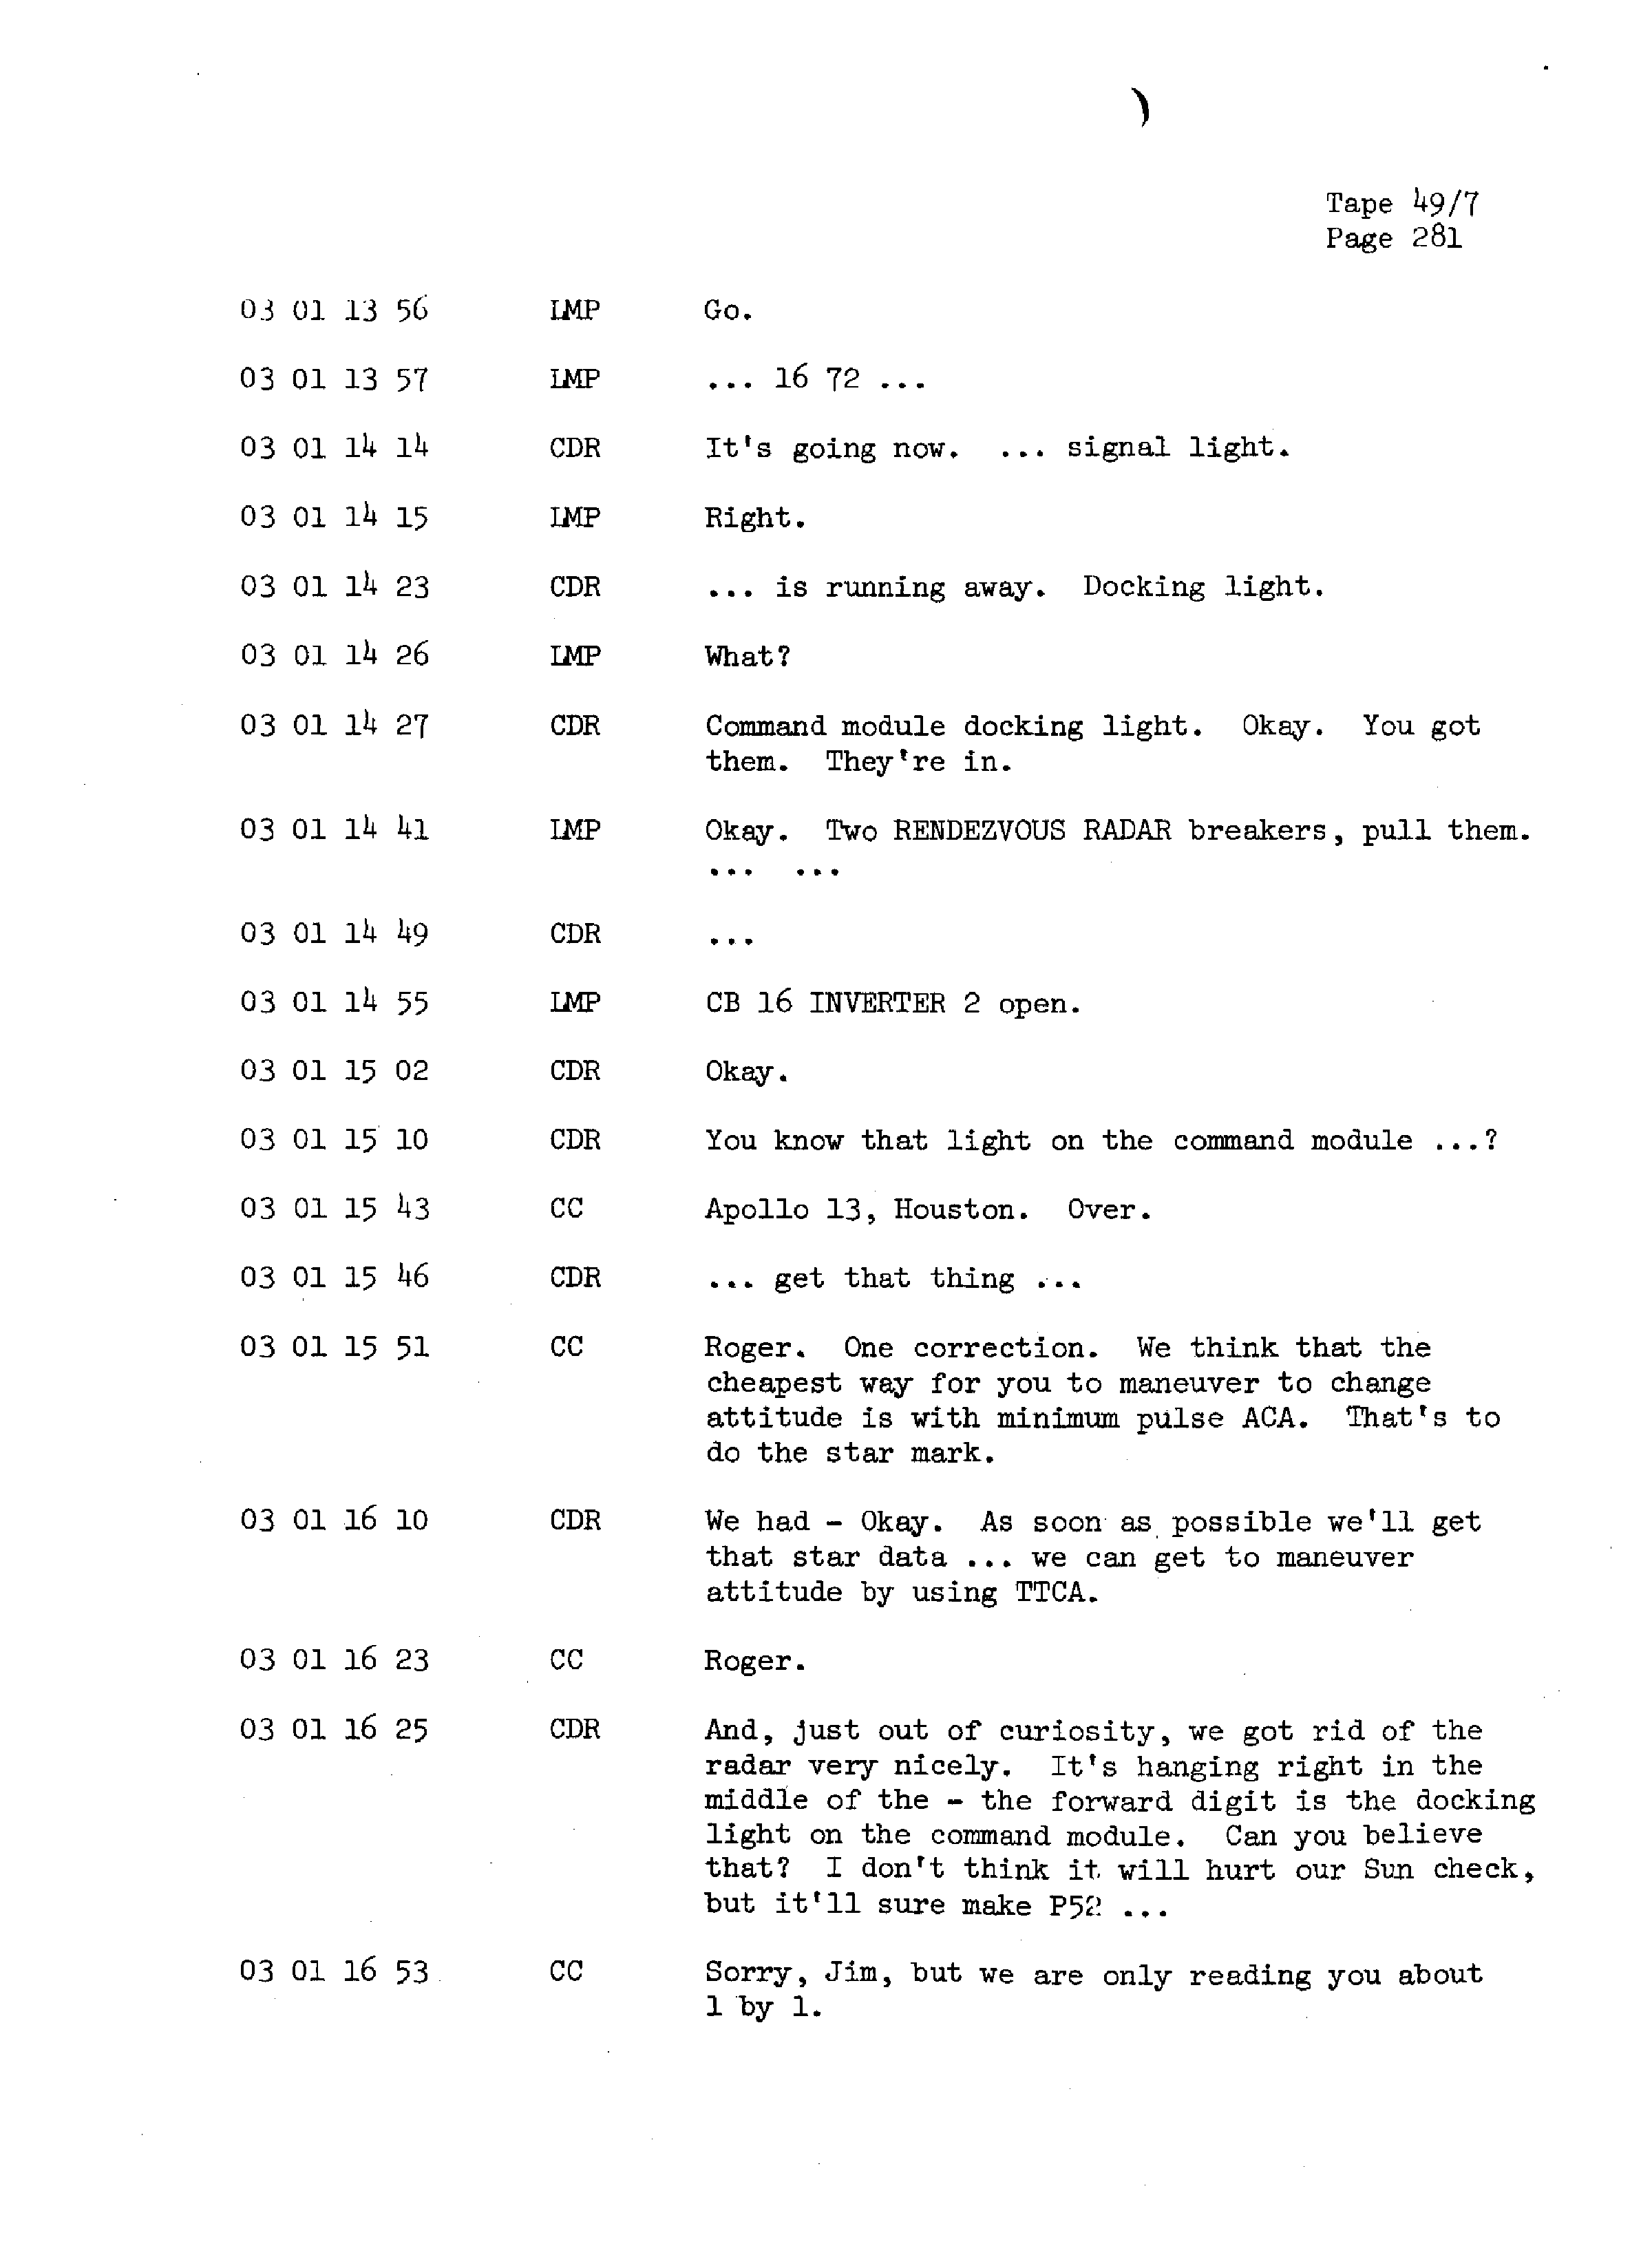 Page 288 of Apollo 13’s original transcript